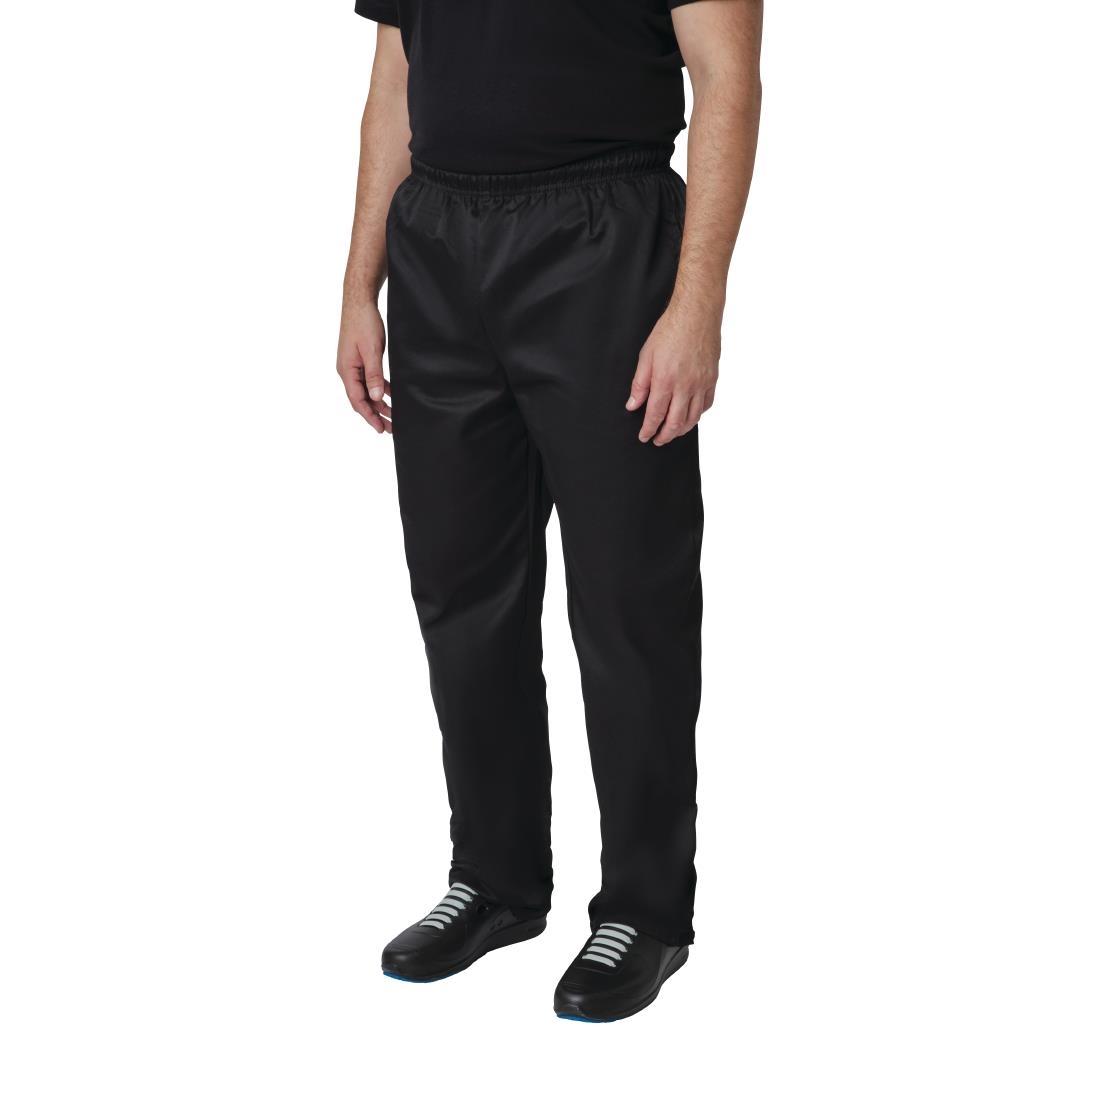 Whites Vegas Chef Trousers Polycotton Black 5XL - A582-5XL  - 2